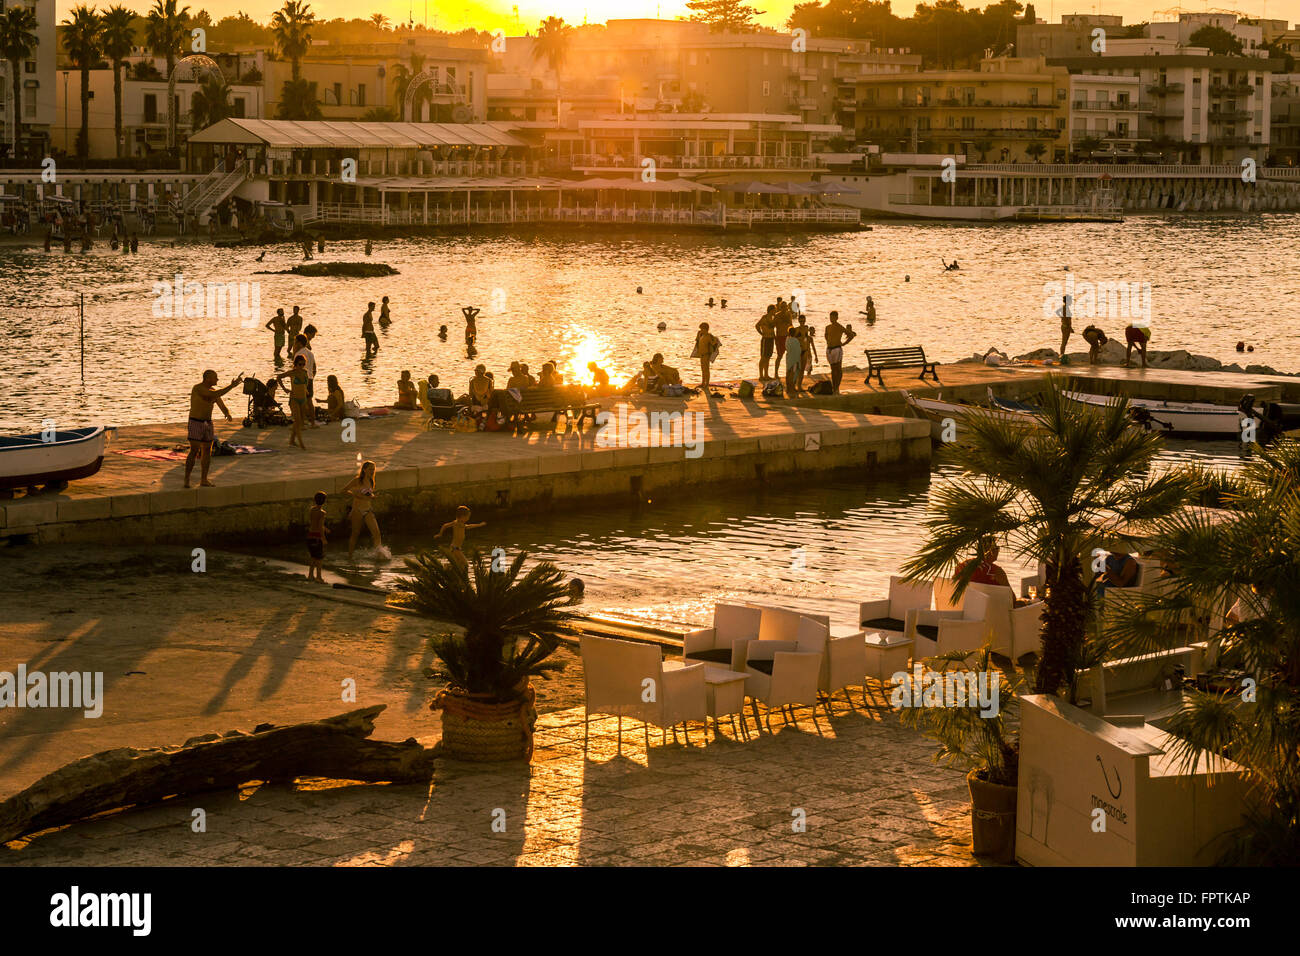 Otranto, Italie - Lundi 11 mars 2014 : le coucher du soleil sur le front de mer d'Otranto, au sud de l'Italie. Banque D'Images